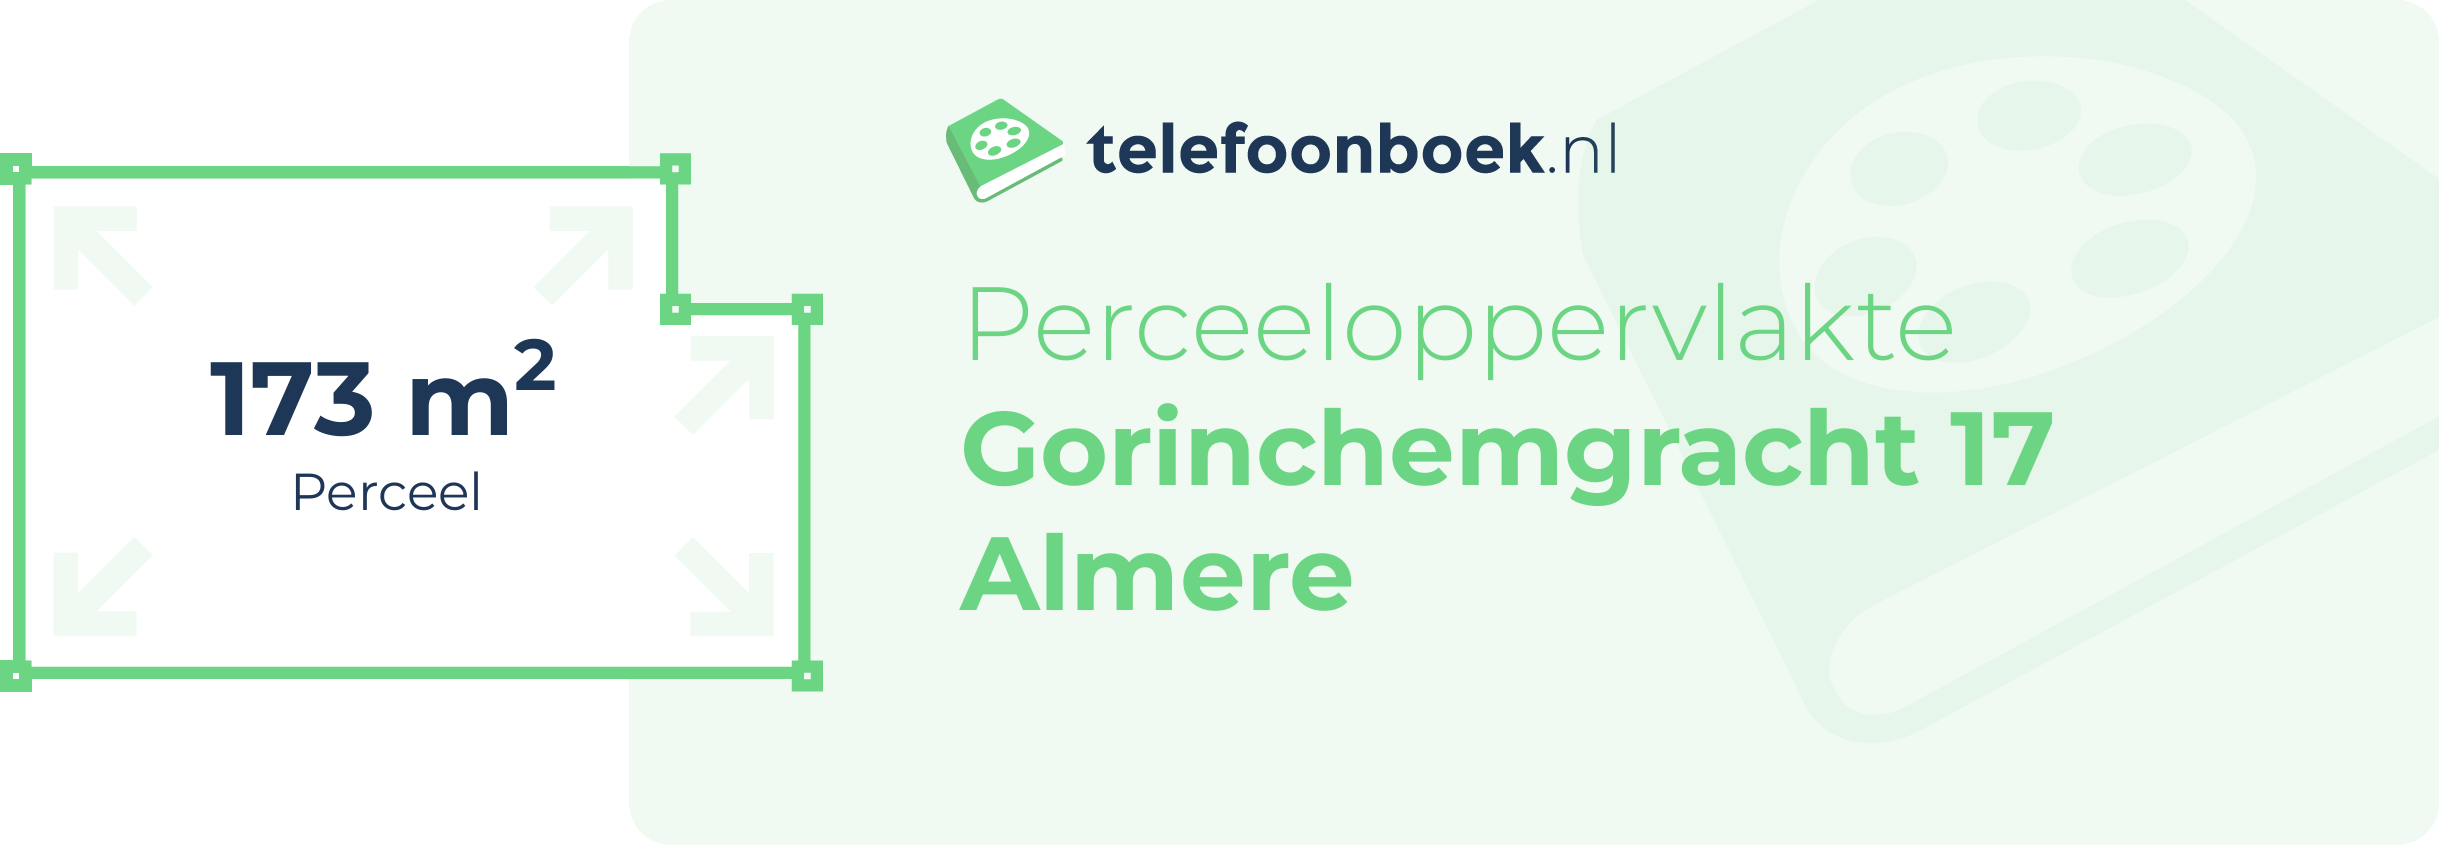 Perceeloppervlakte Gorinchemgracht 17 Almere